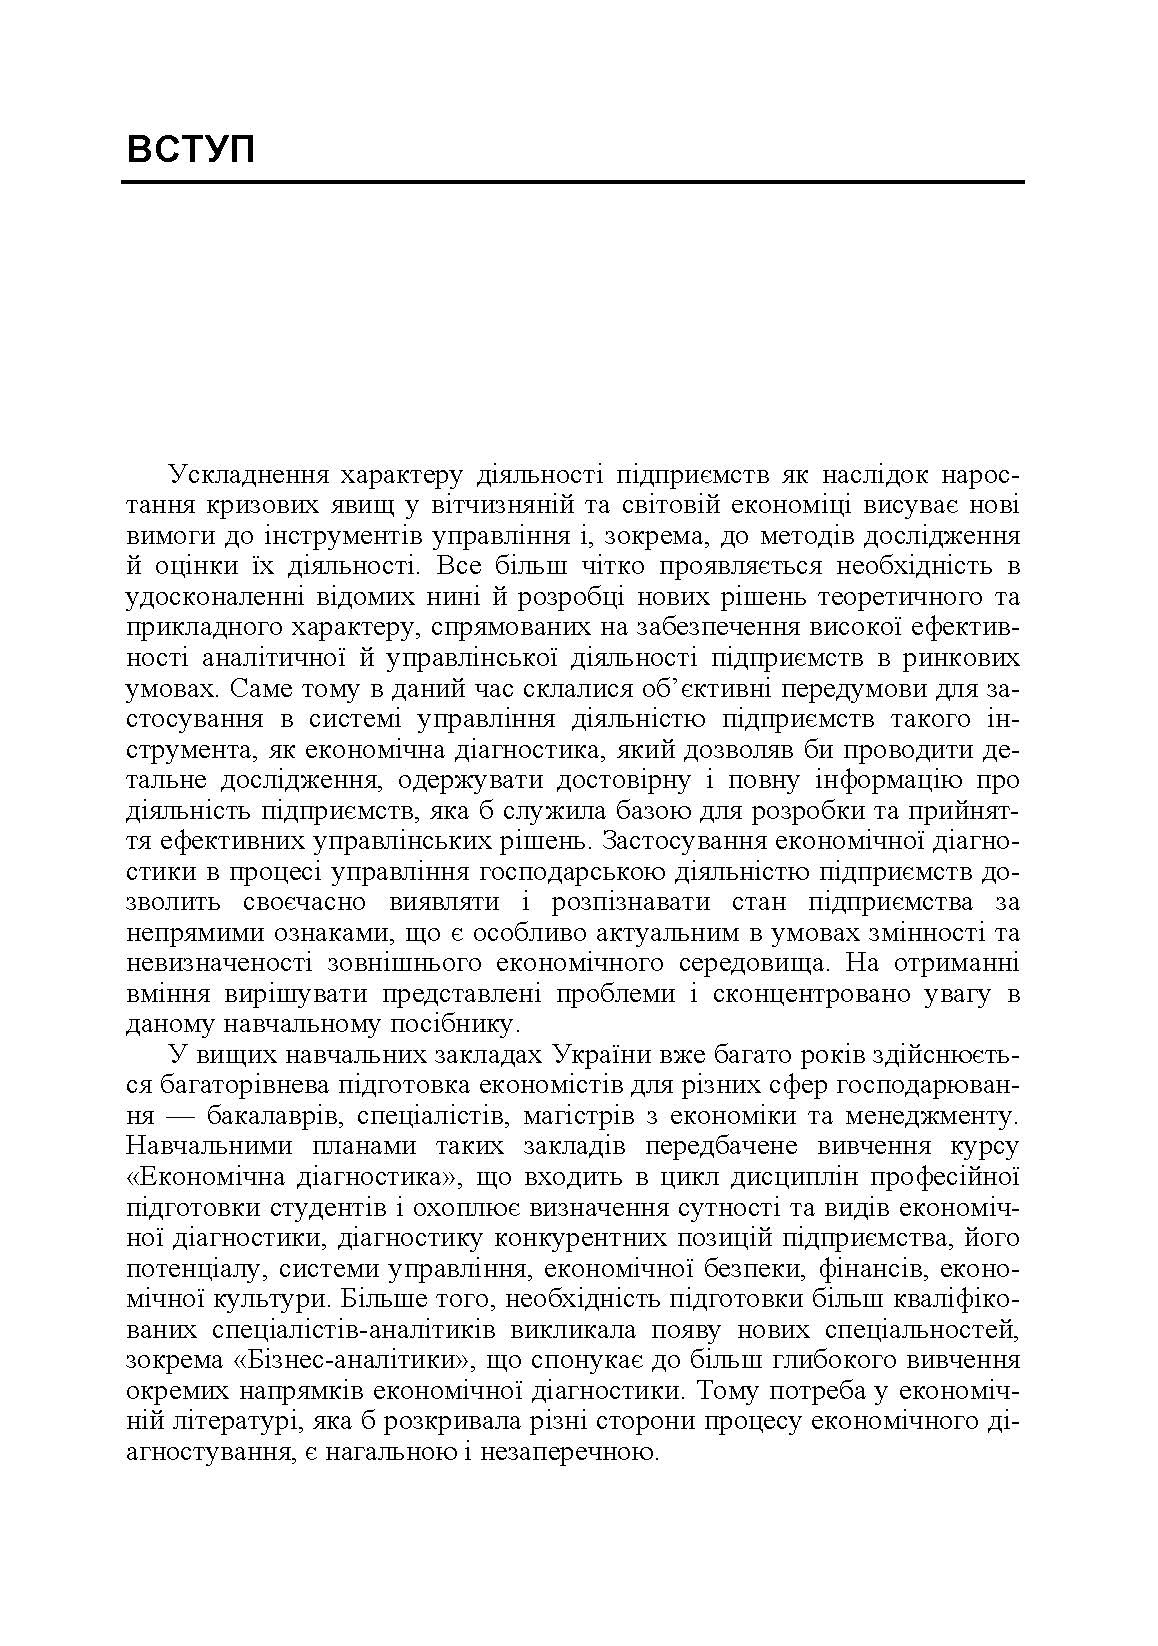 Економічна діагностика. (2019 год)). Автор — Кривов'язюк І.В.. 